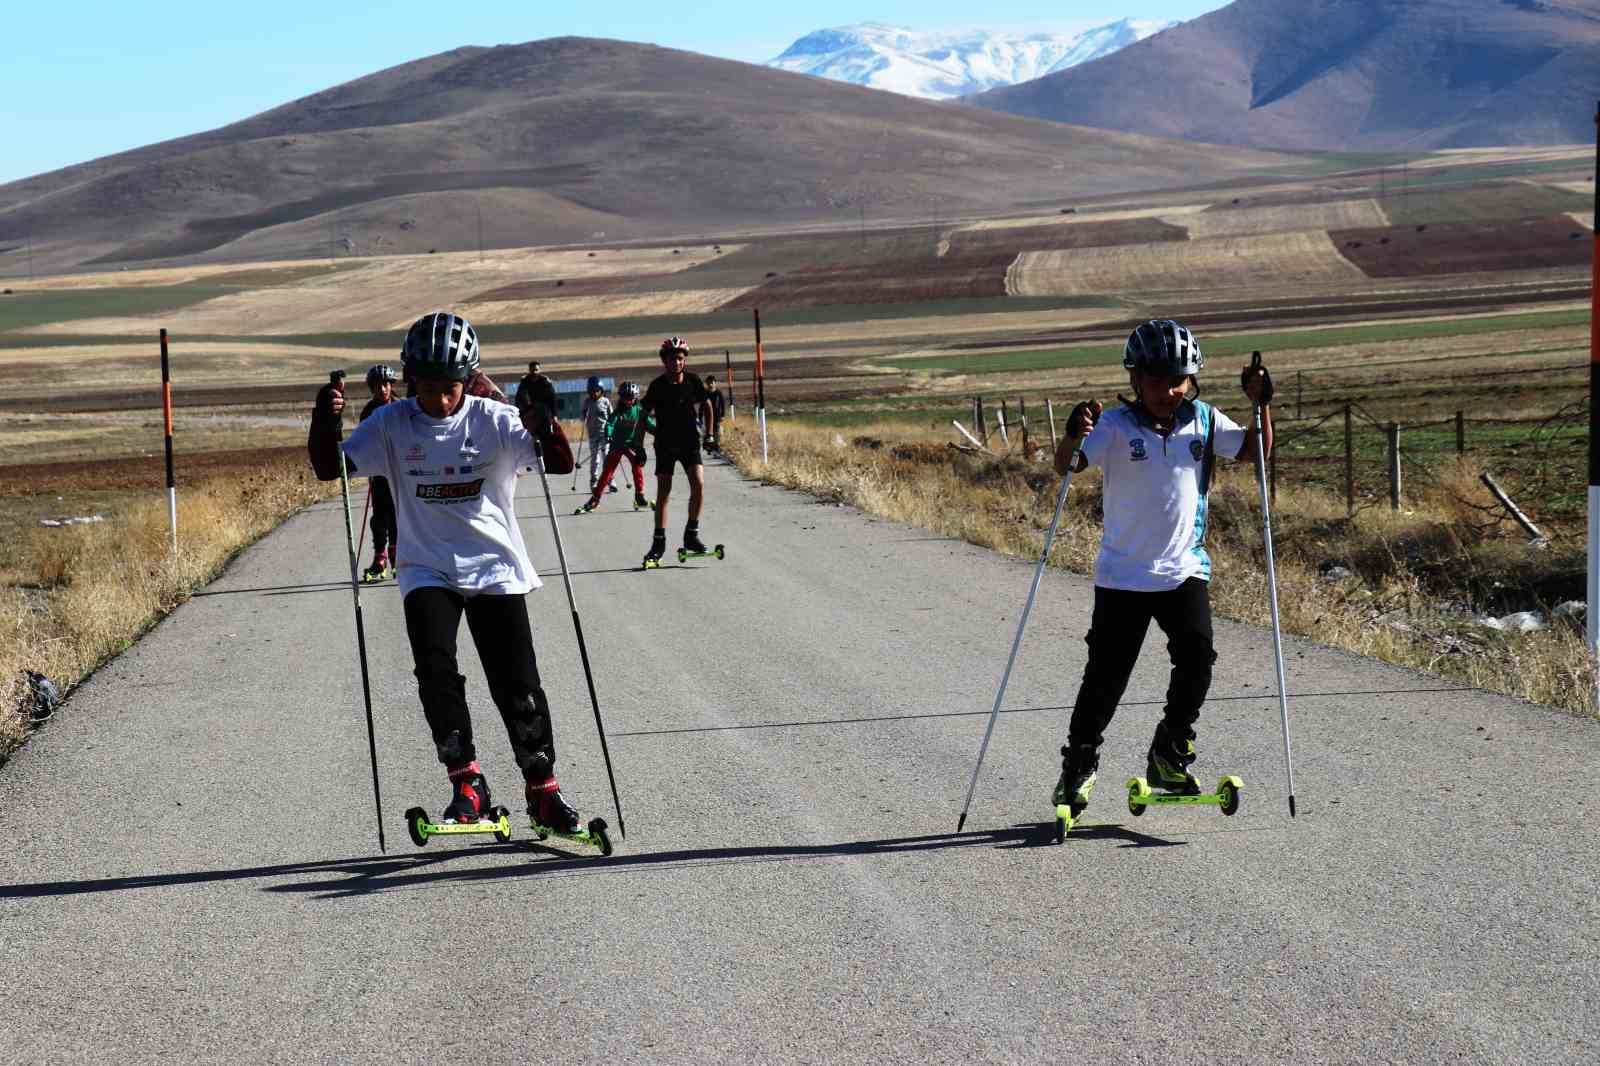 Vanlı kayakçılara kayaklı koşu şampiyonasına hazırlanıyorlar